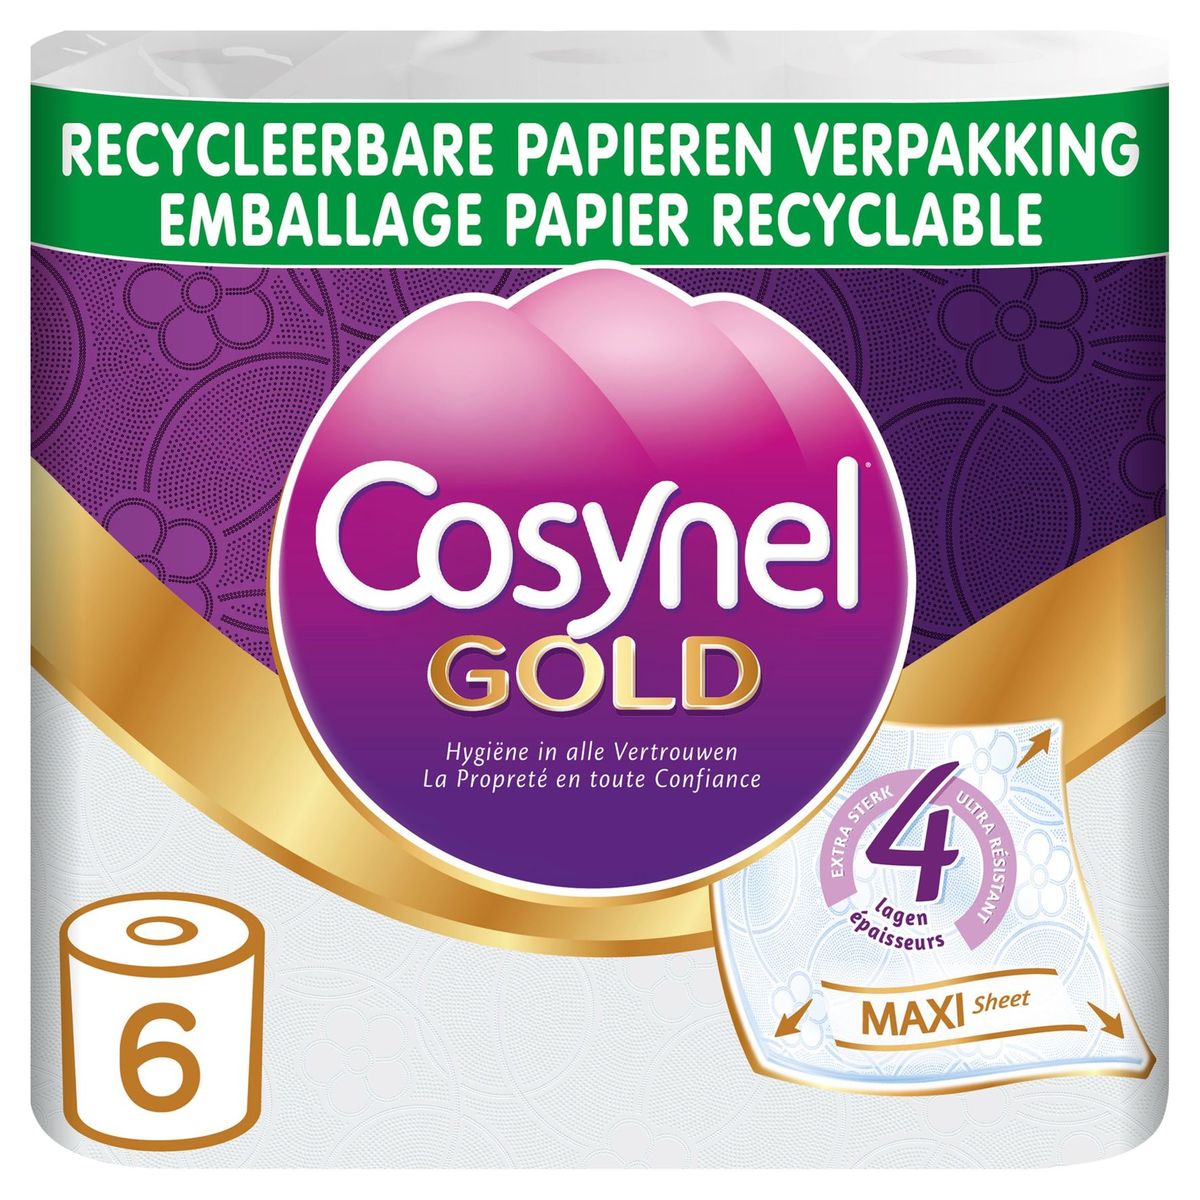 Cosynel Gold 4 Lagen Toiletpapier 6 Rollen